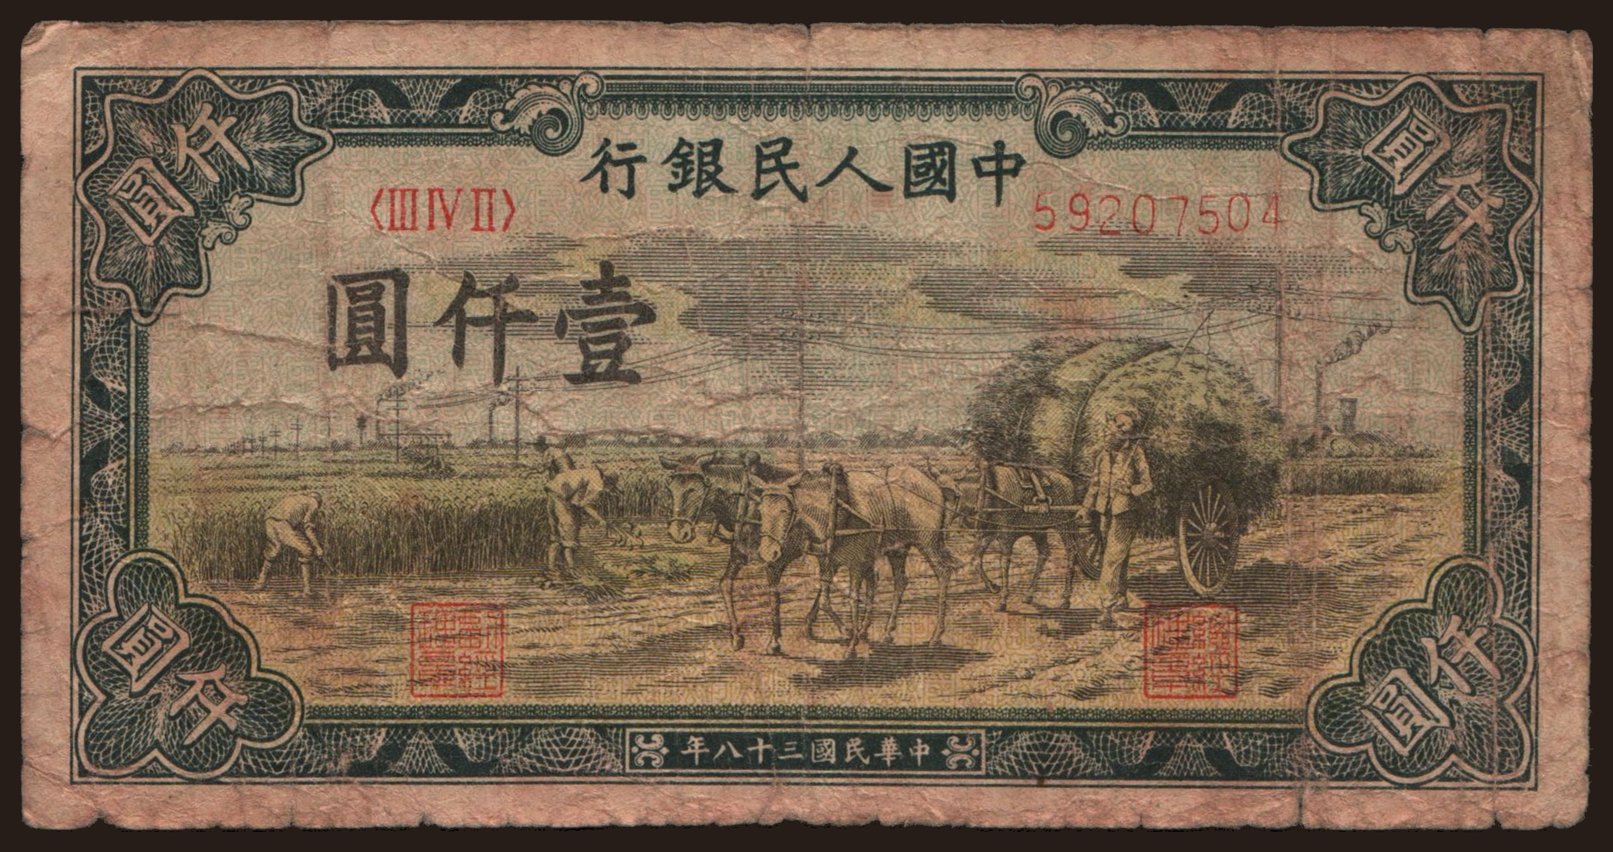 1000 yuan, 1949